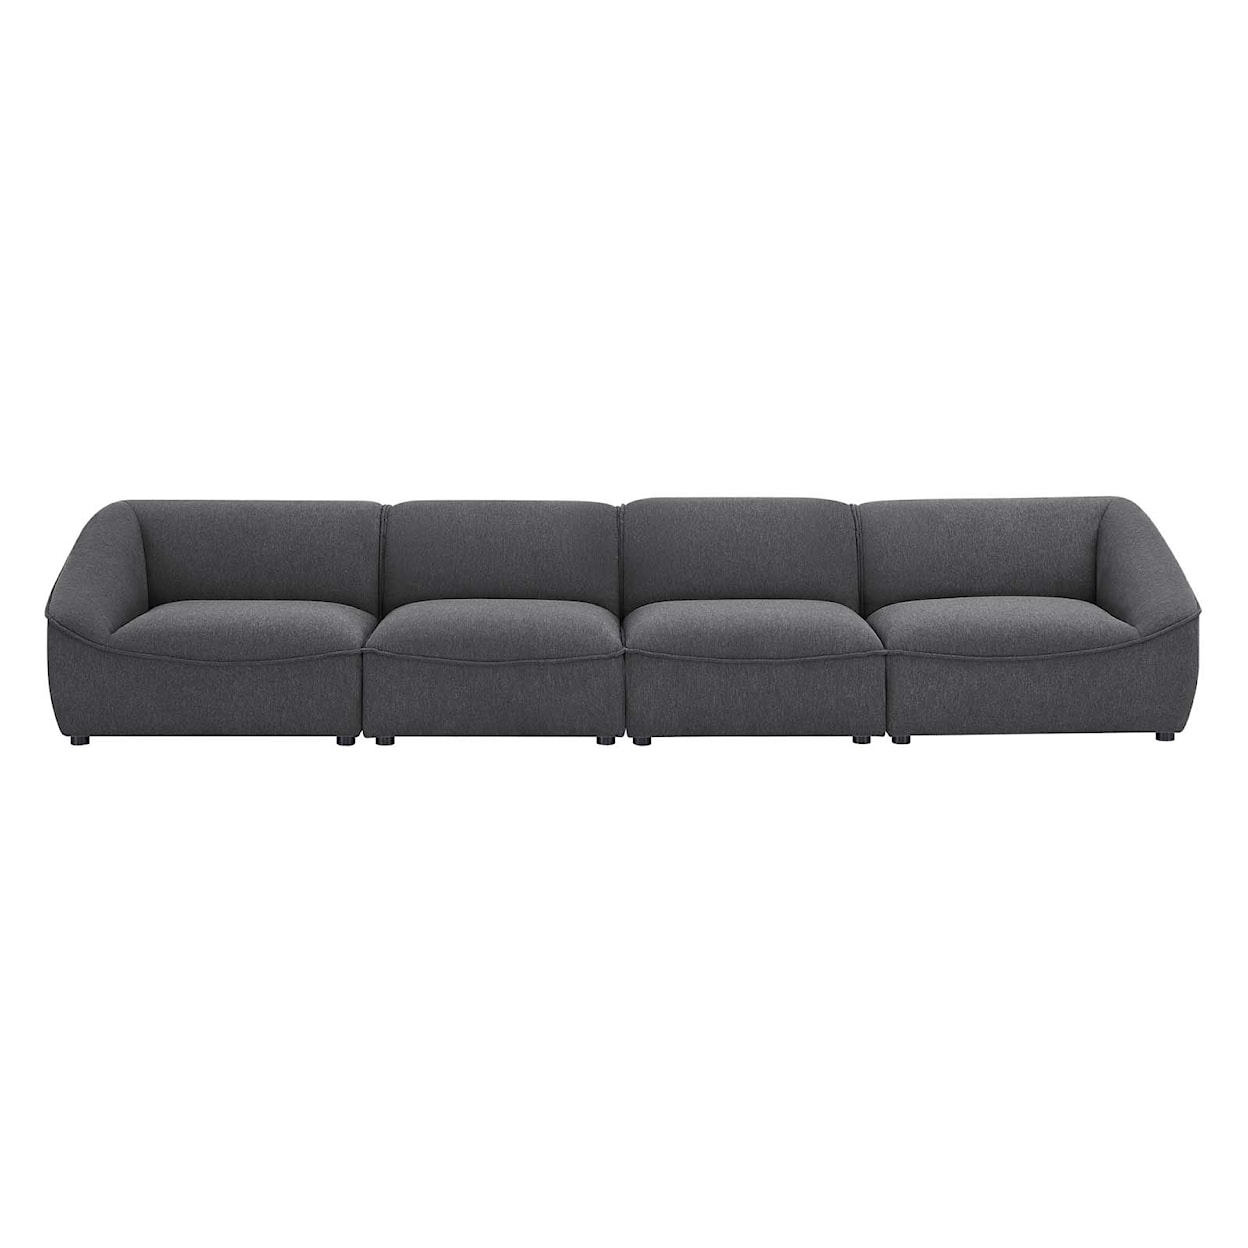 Modway Comprise 4-Piece Sofa